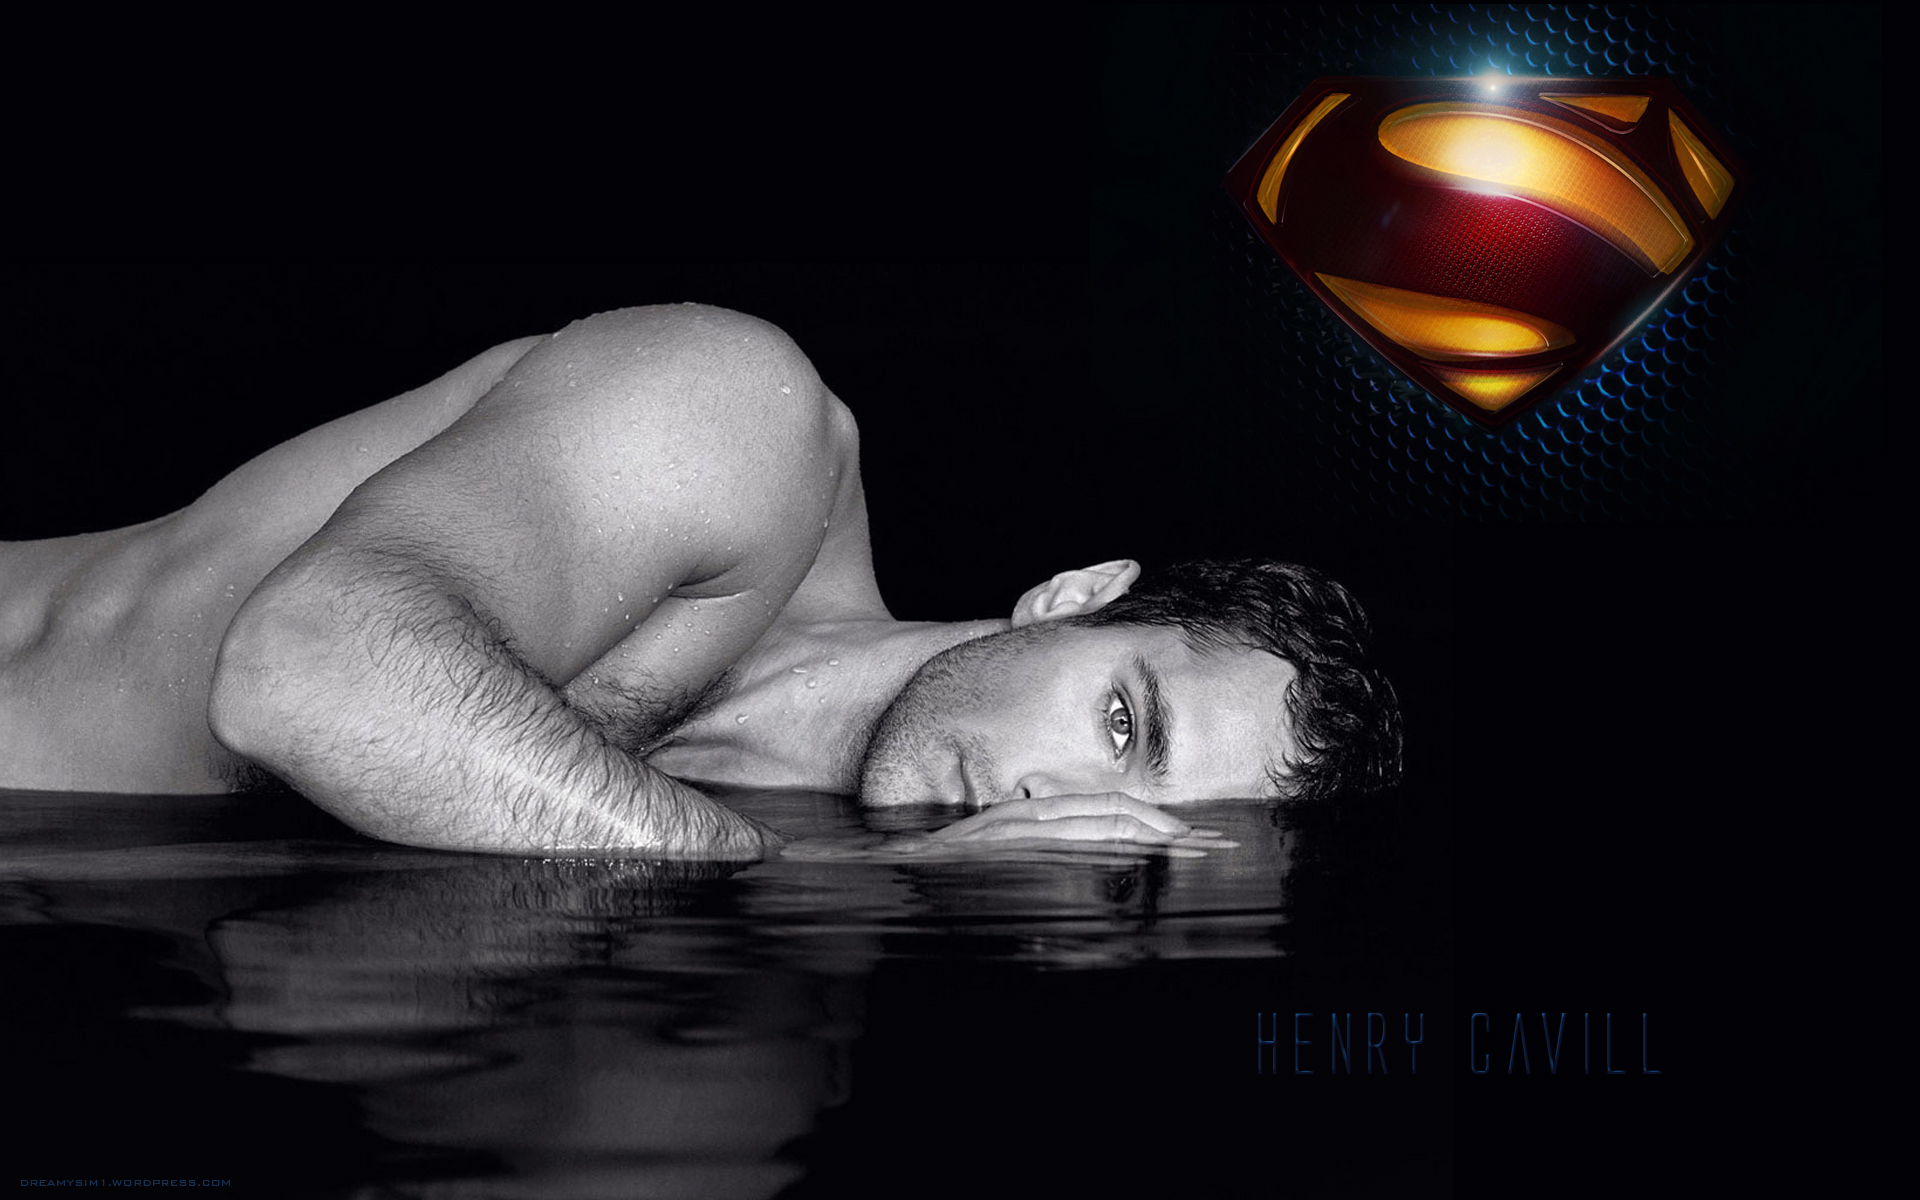 Henry Cavill Superman Man of Steel 2013 HD Wallpaper 3885